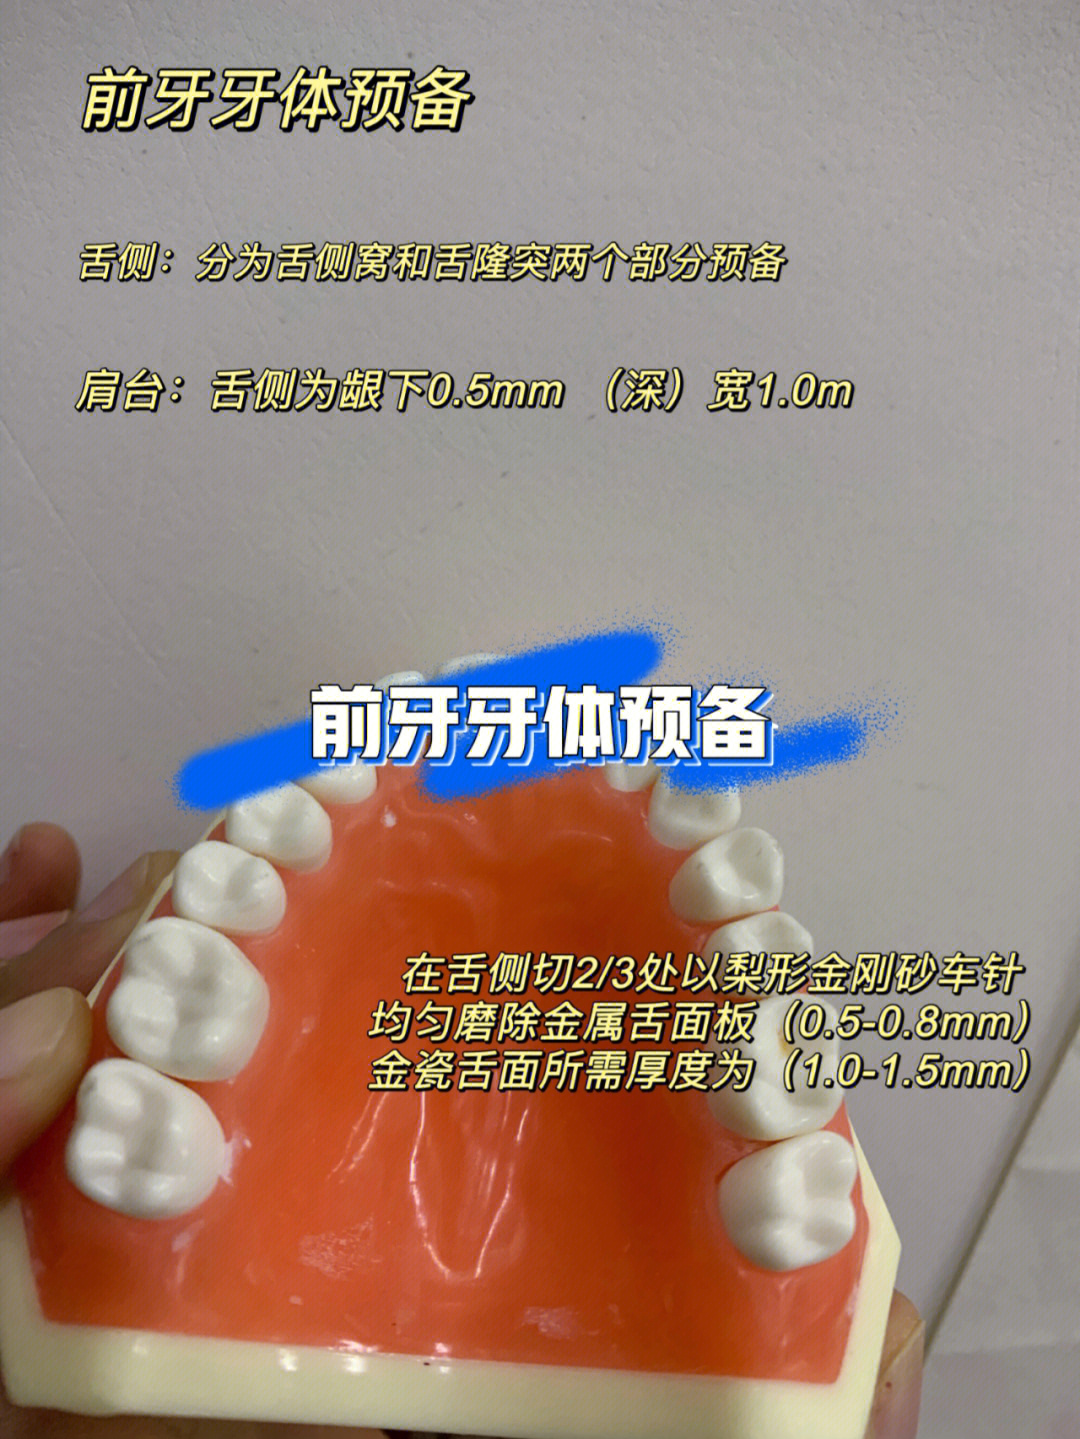 中起着至关重要的作用0000前牙牙体预备相对新手来说,难度更大